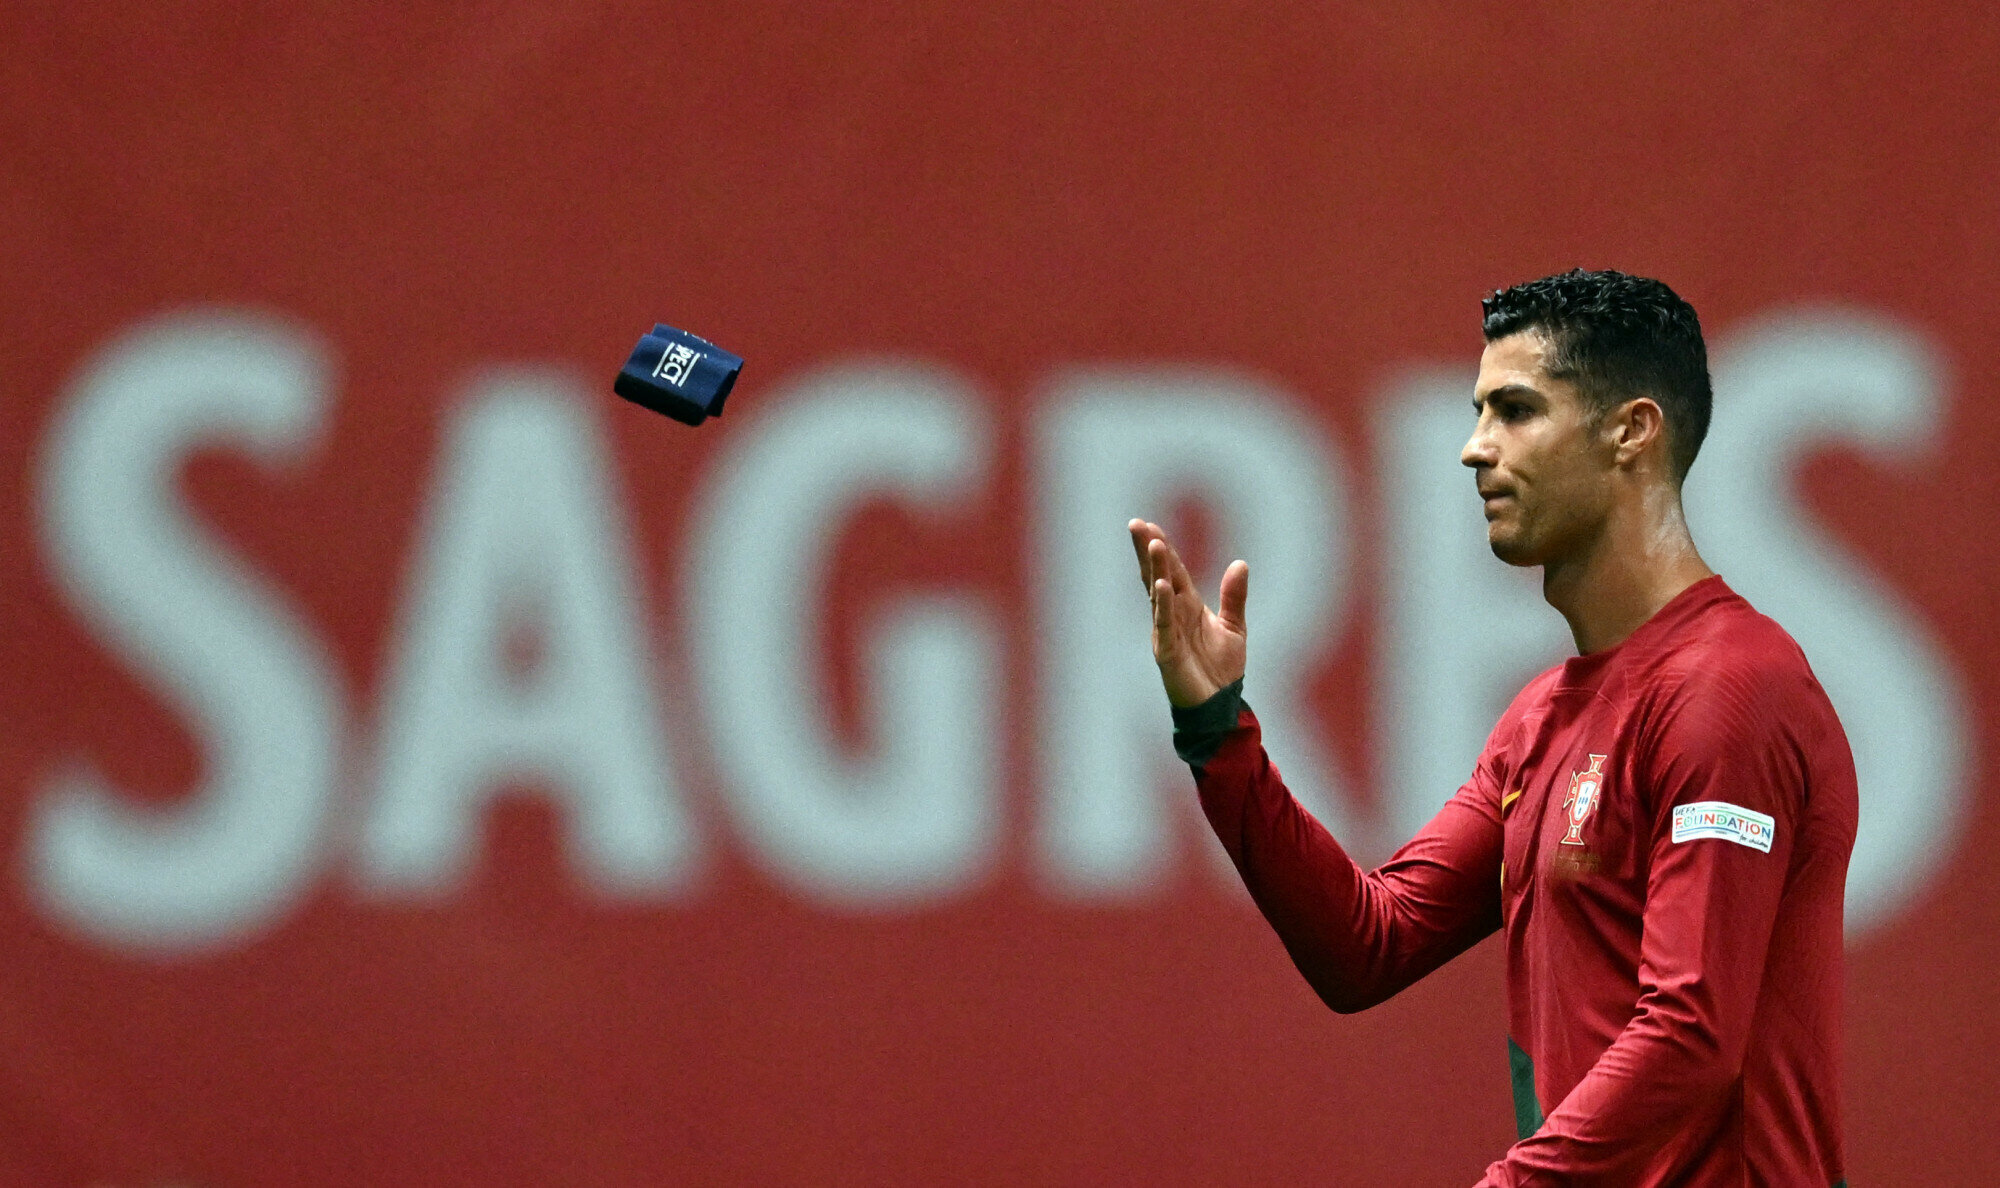 Pse nuk i rezistoi humbjes Cristiano Ronaldo? Shiritin e kapitenit e hodhi dhe në një ndeshje tjetër